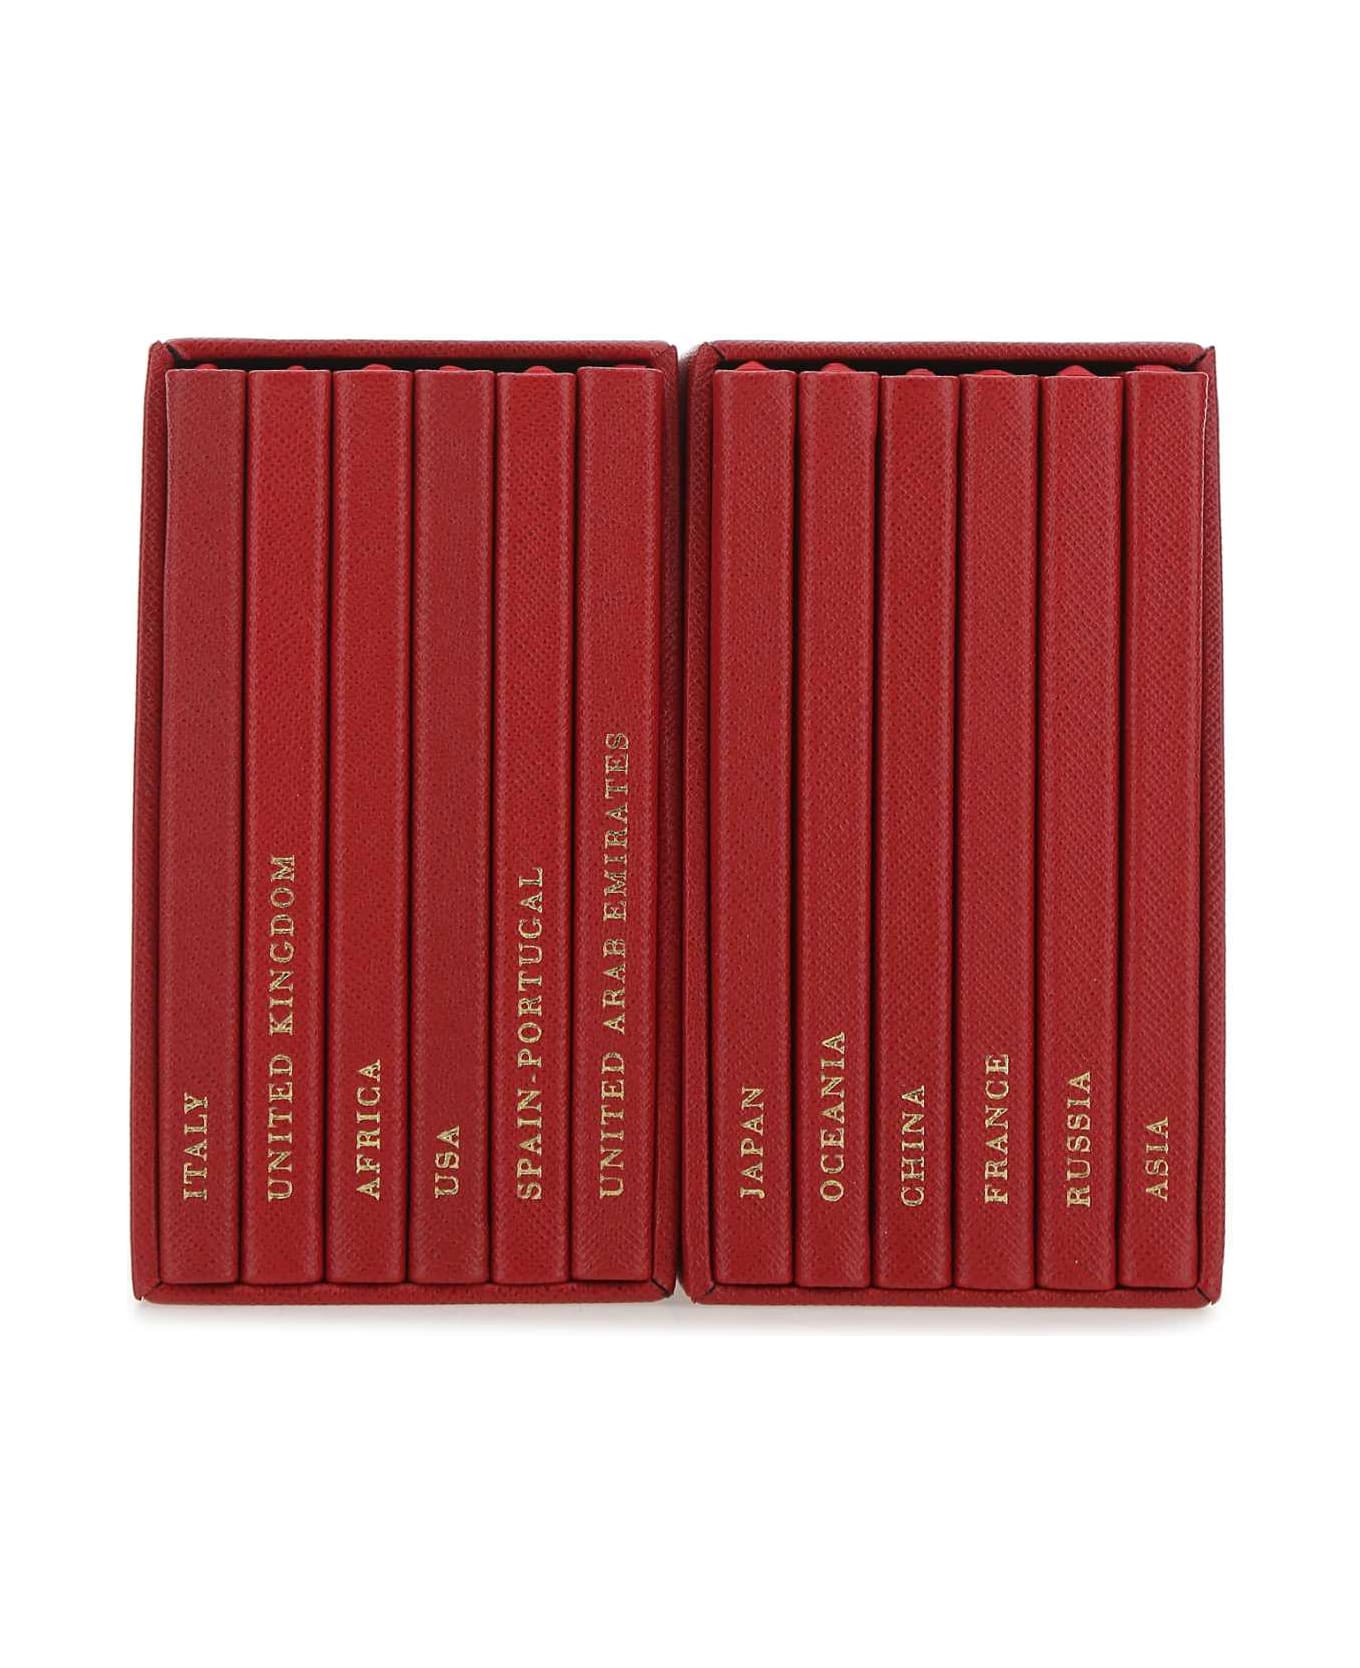 Prada Red Leather Notebook Set - F068Z インテリア雑貨